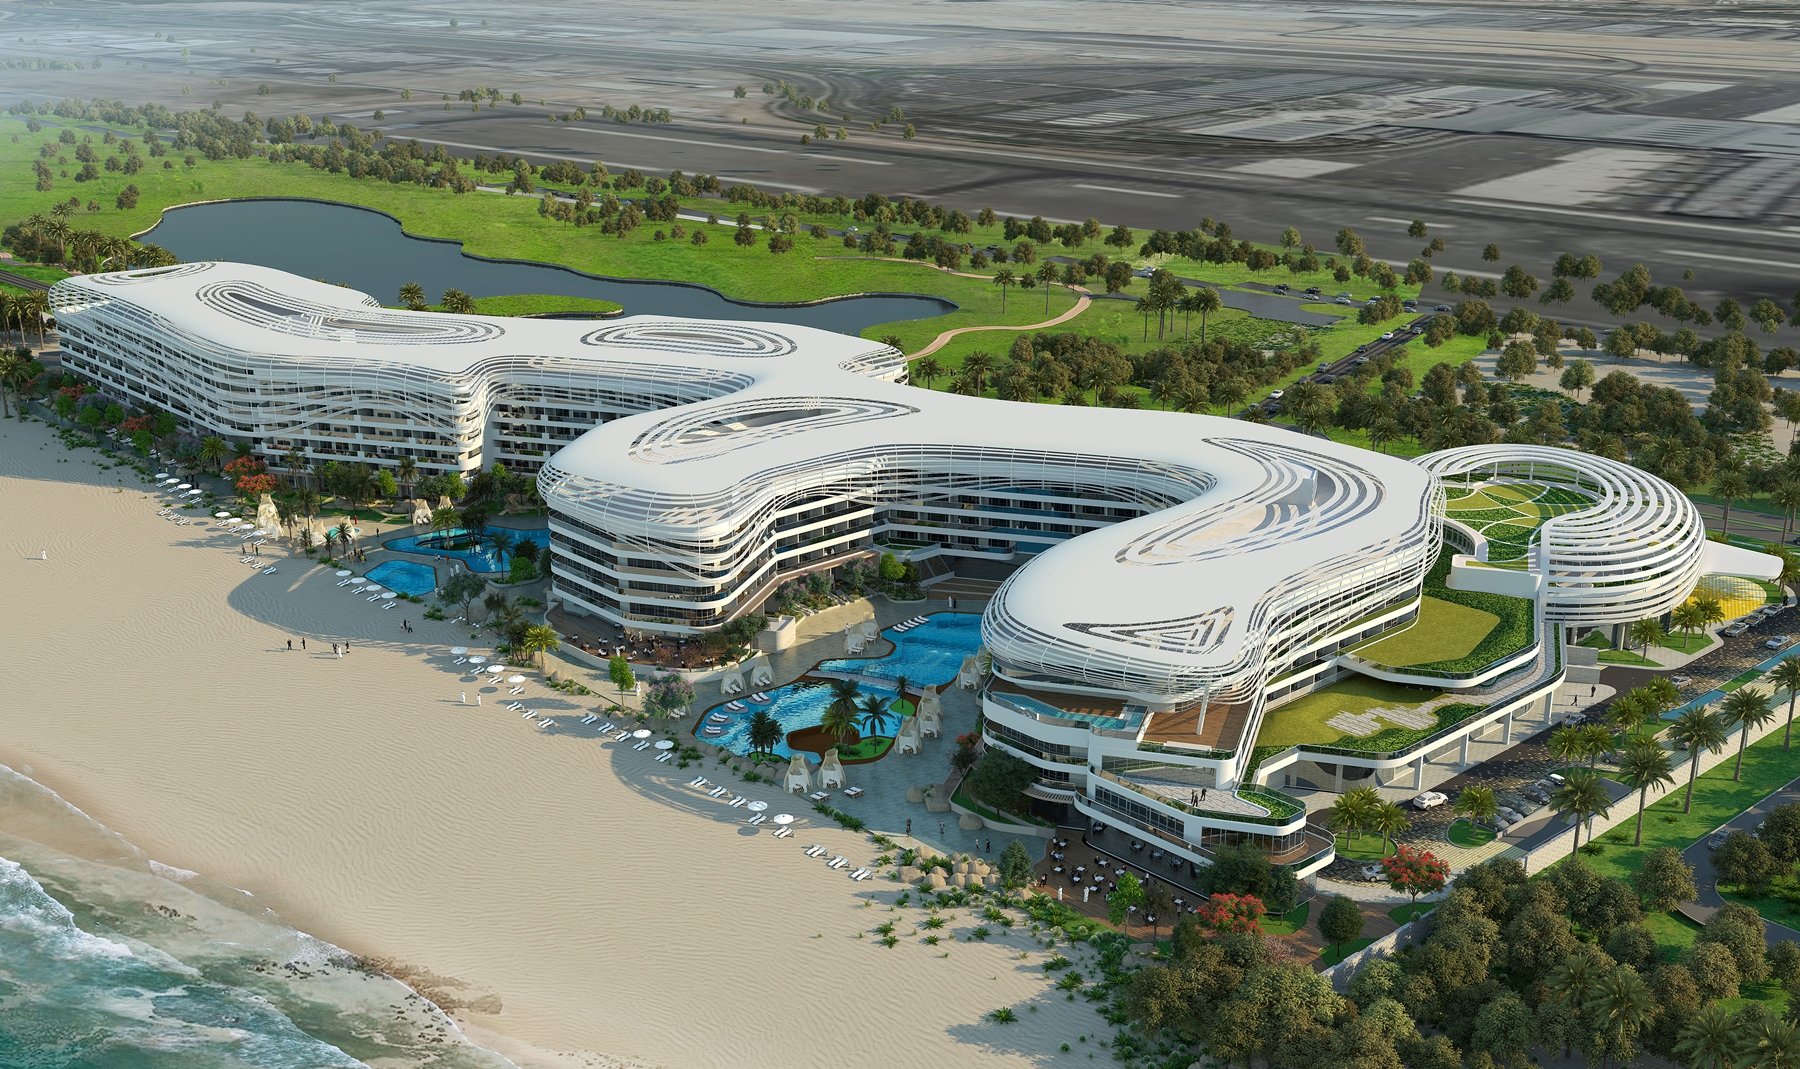 Marriott to bring St. Regis to Oman Hotel Management